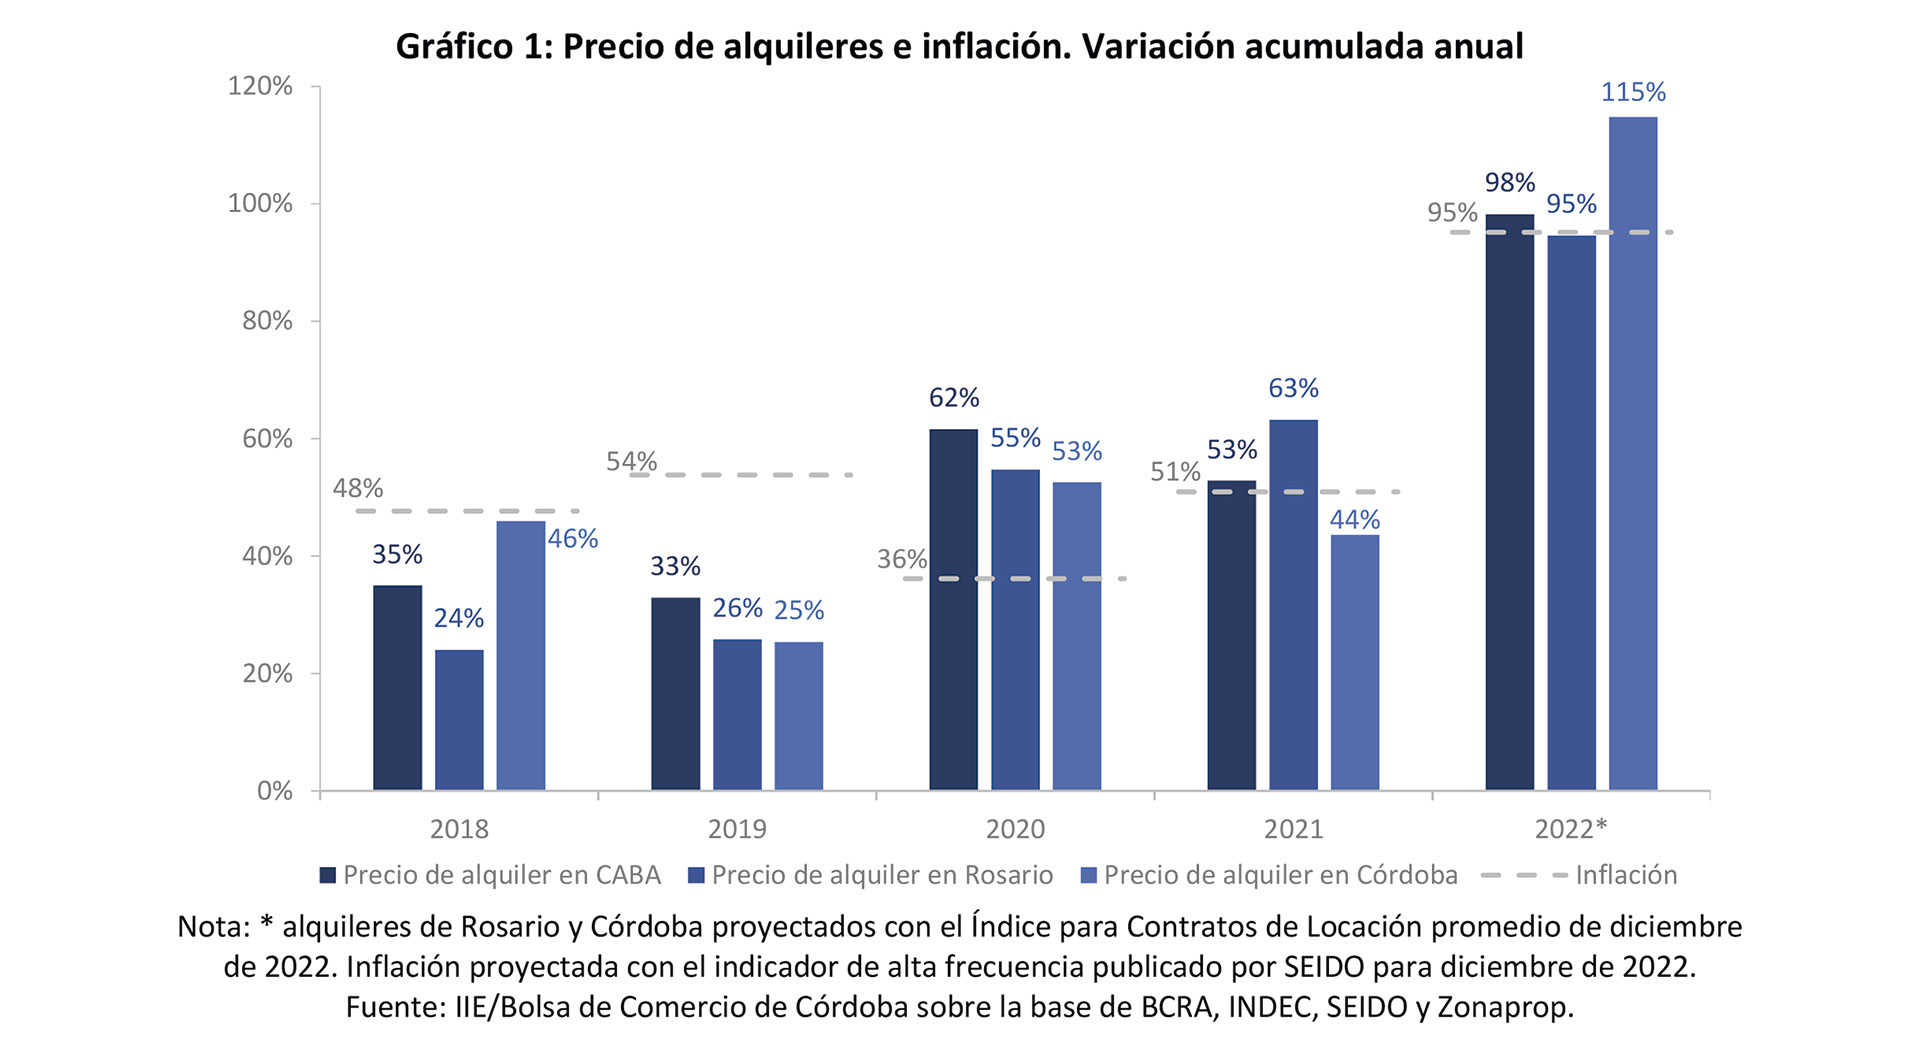 Fuente: Instituto de Investigaciones Económicas de la Bolsa de Comercio de Córdoba